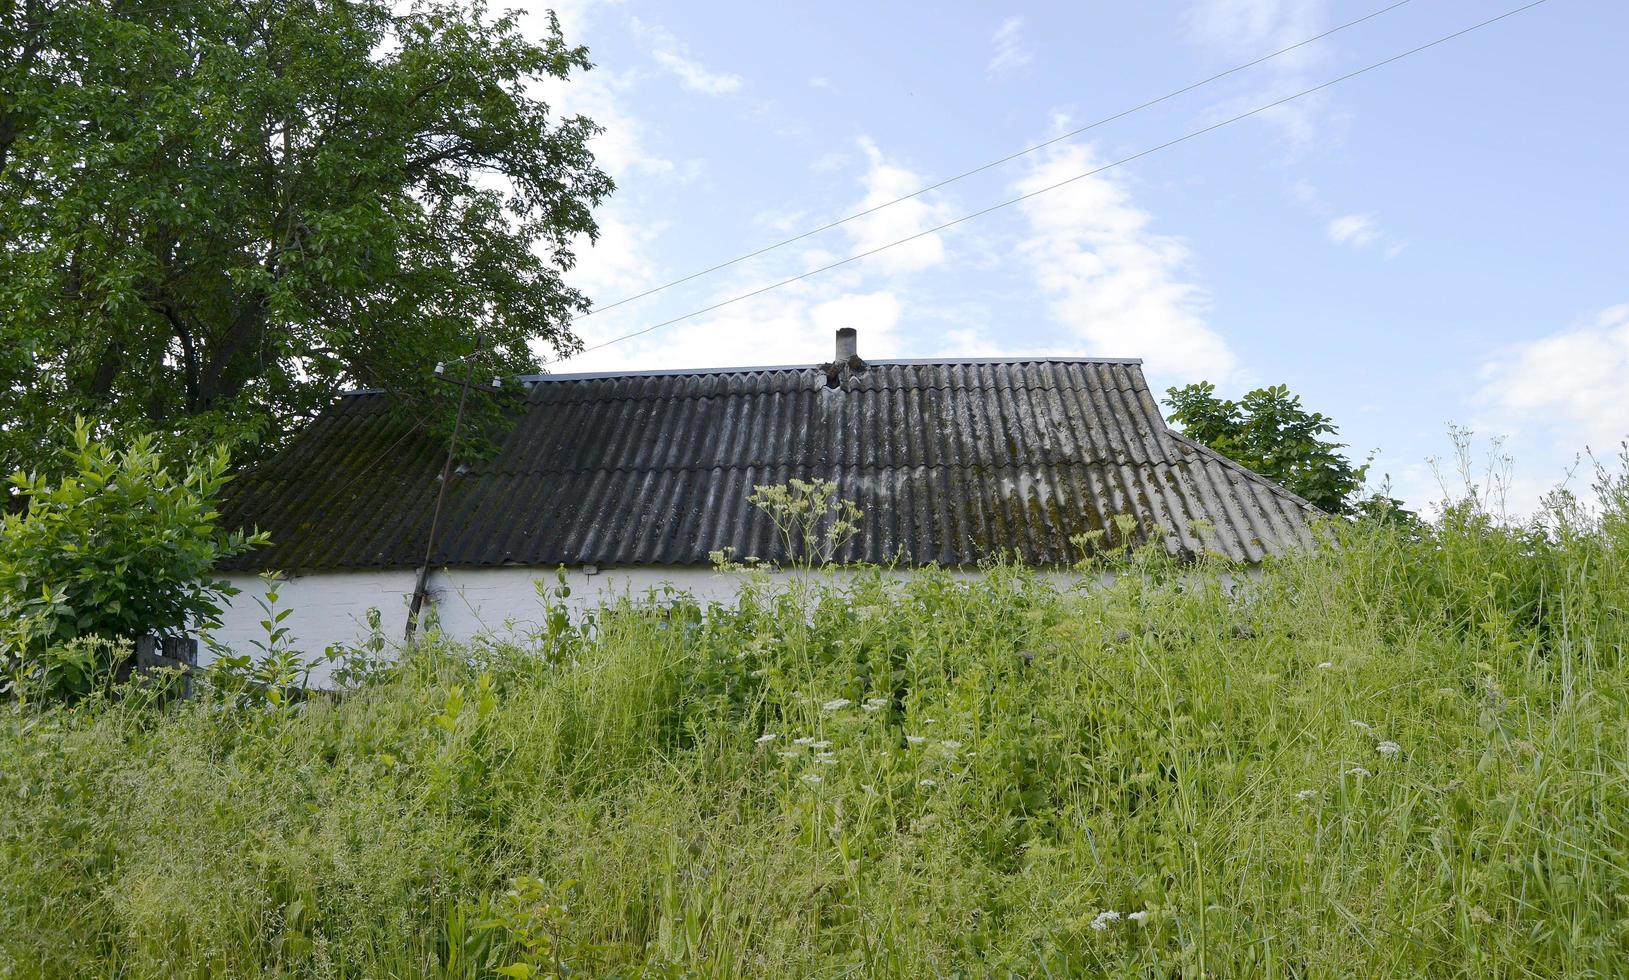 belle vieille maison de ferme de bâtiment abandonné dans la campagne photo